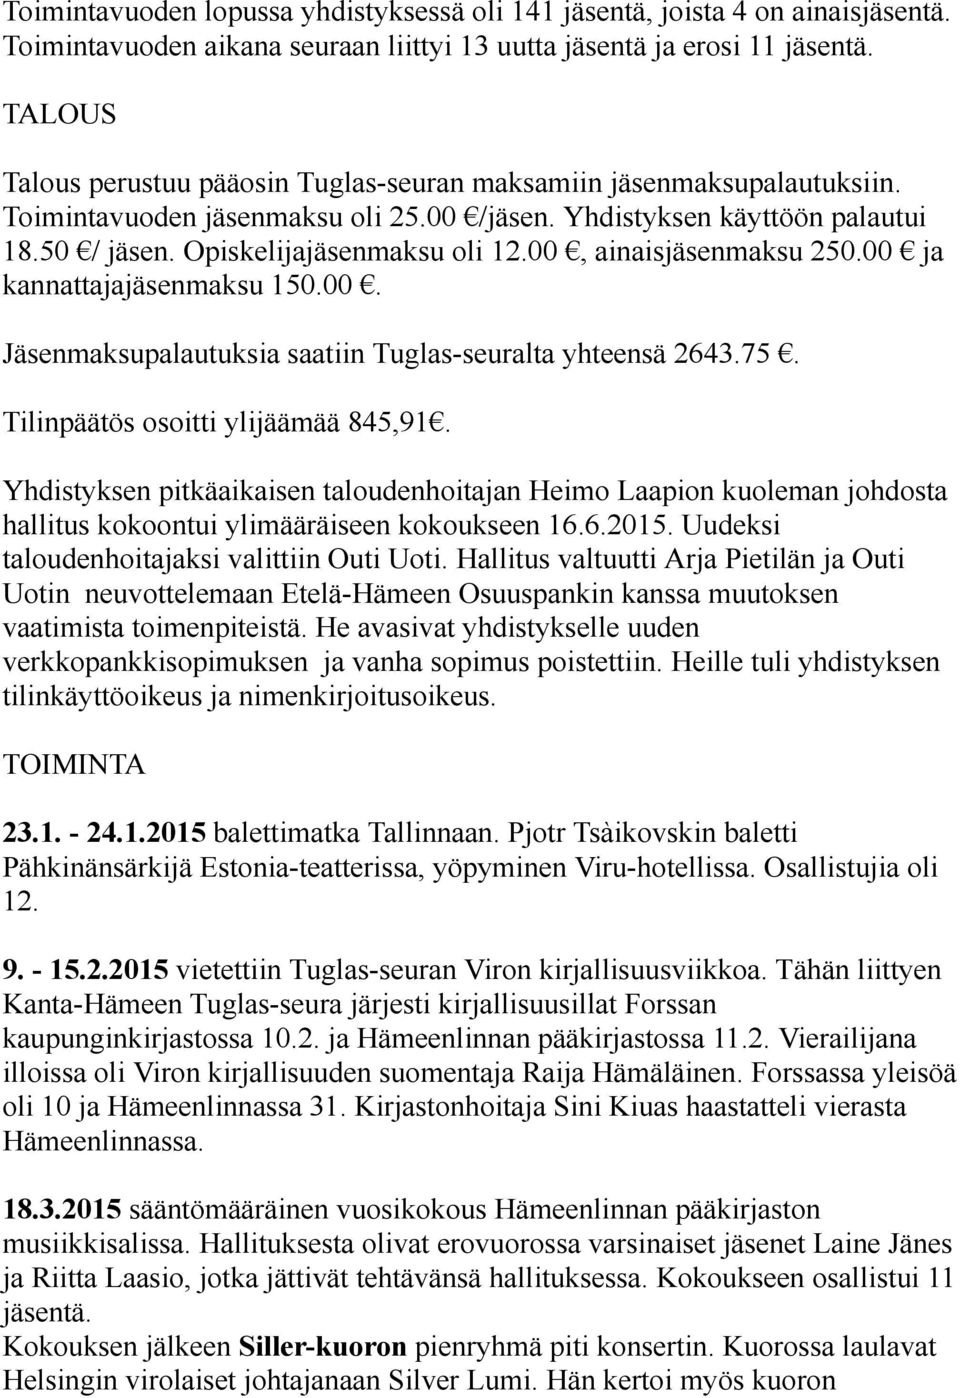 00, ainaisjäsenmaksu 250.00 ja kannattajajäsenmaksu 150.00. Jäsenmaksupalautuksia saatiin Tuglas-seuralta yhteensä 2643.75. Tilinpäätös osoitti ylijäämää 845,91.